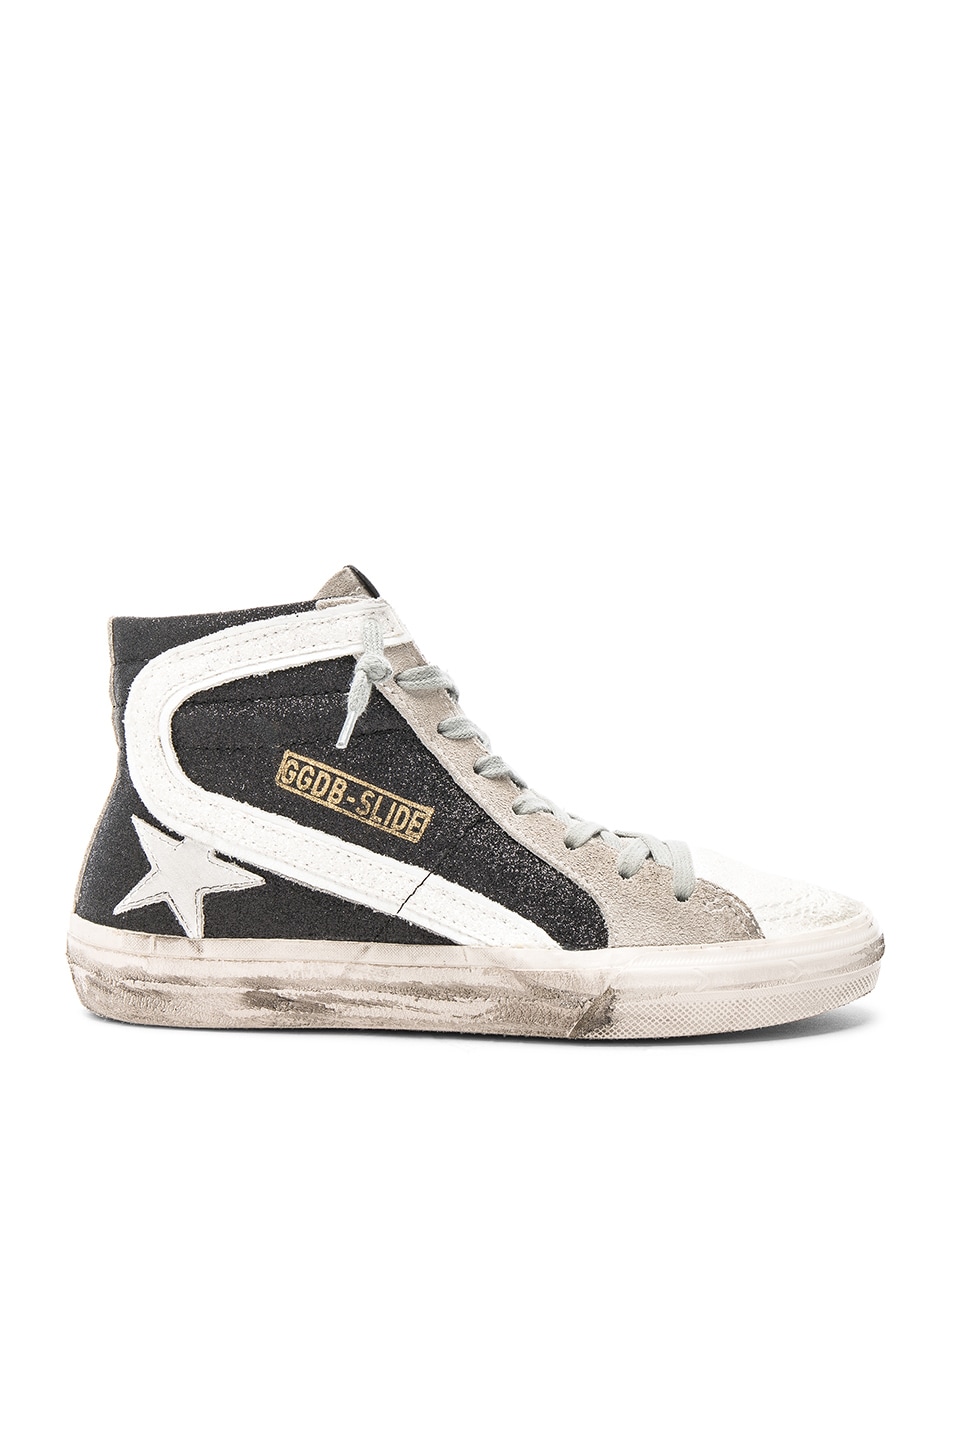 Golden Goose Slide Sneakers in Black & White | FWRD